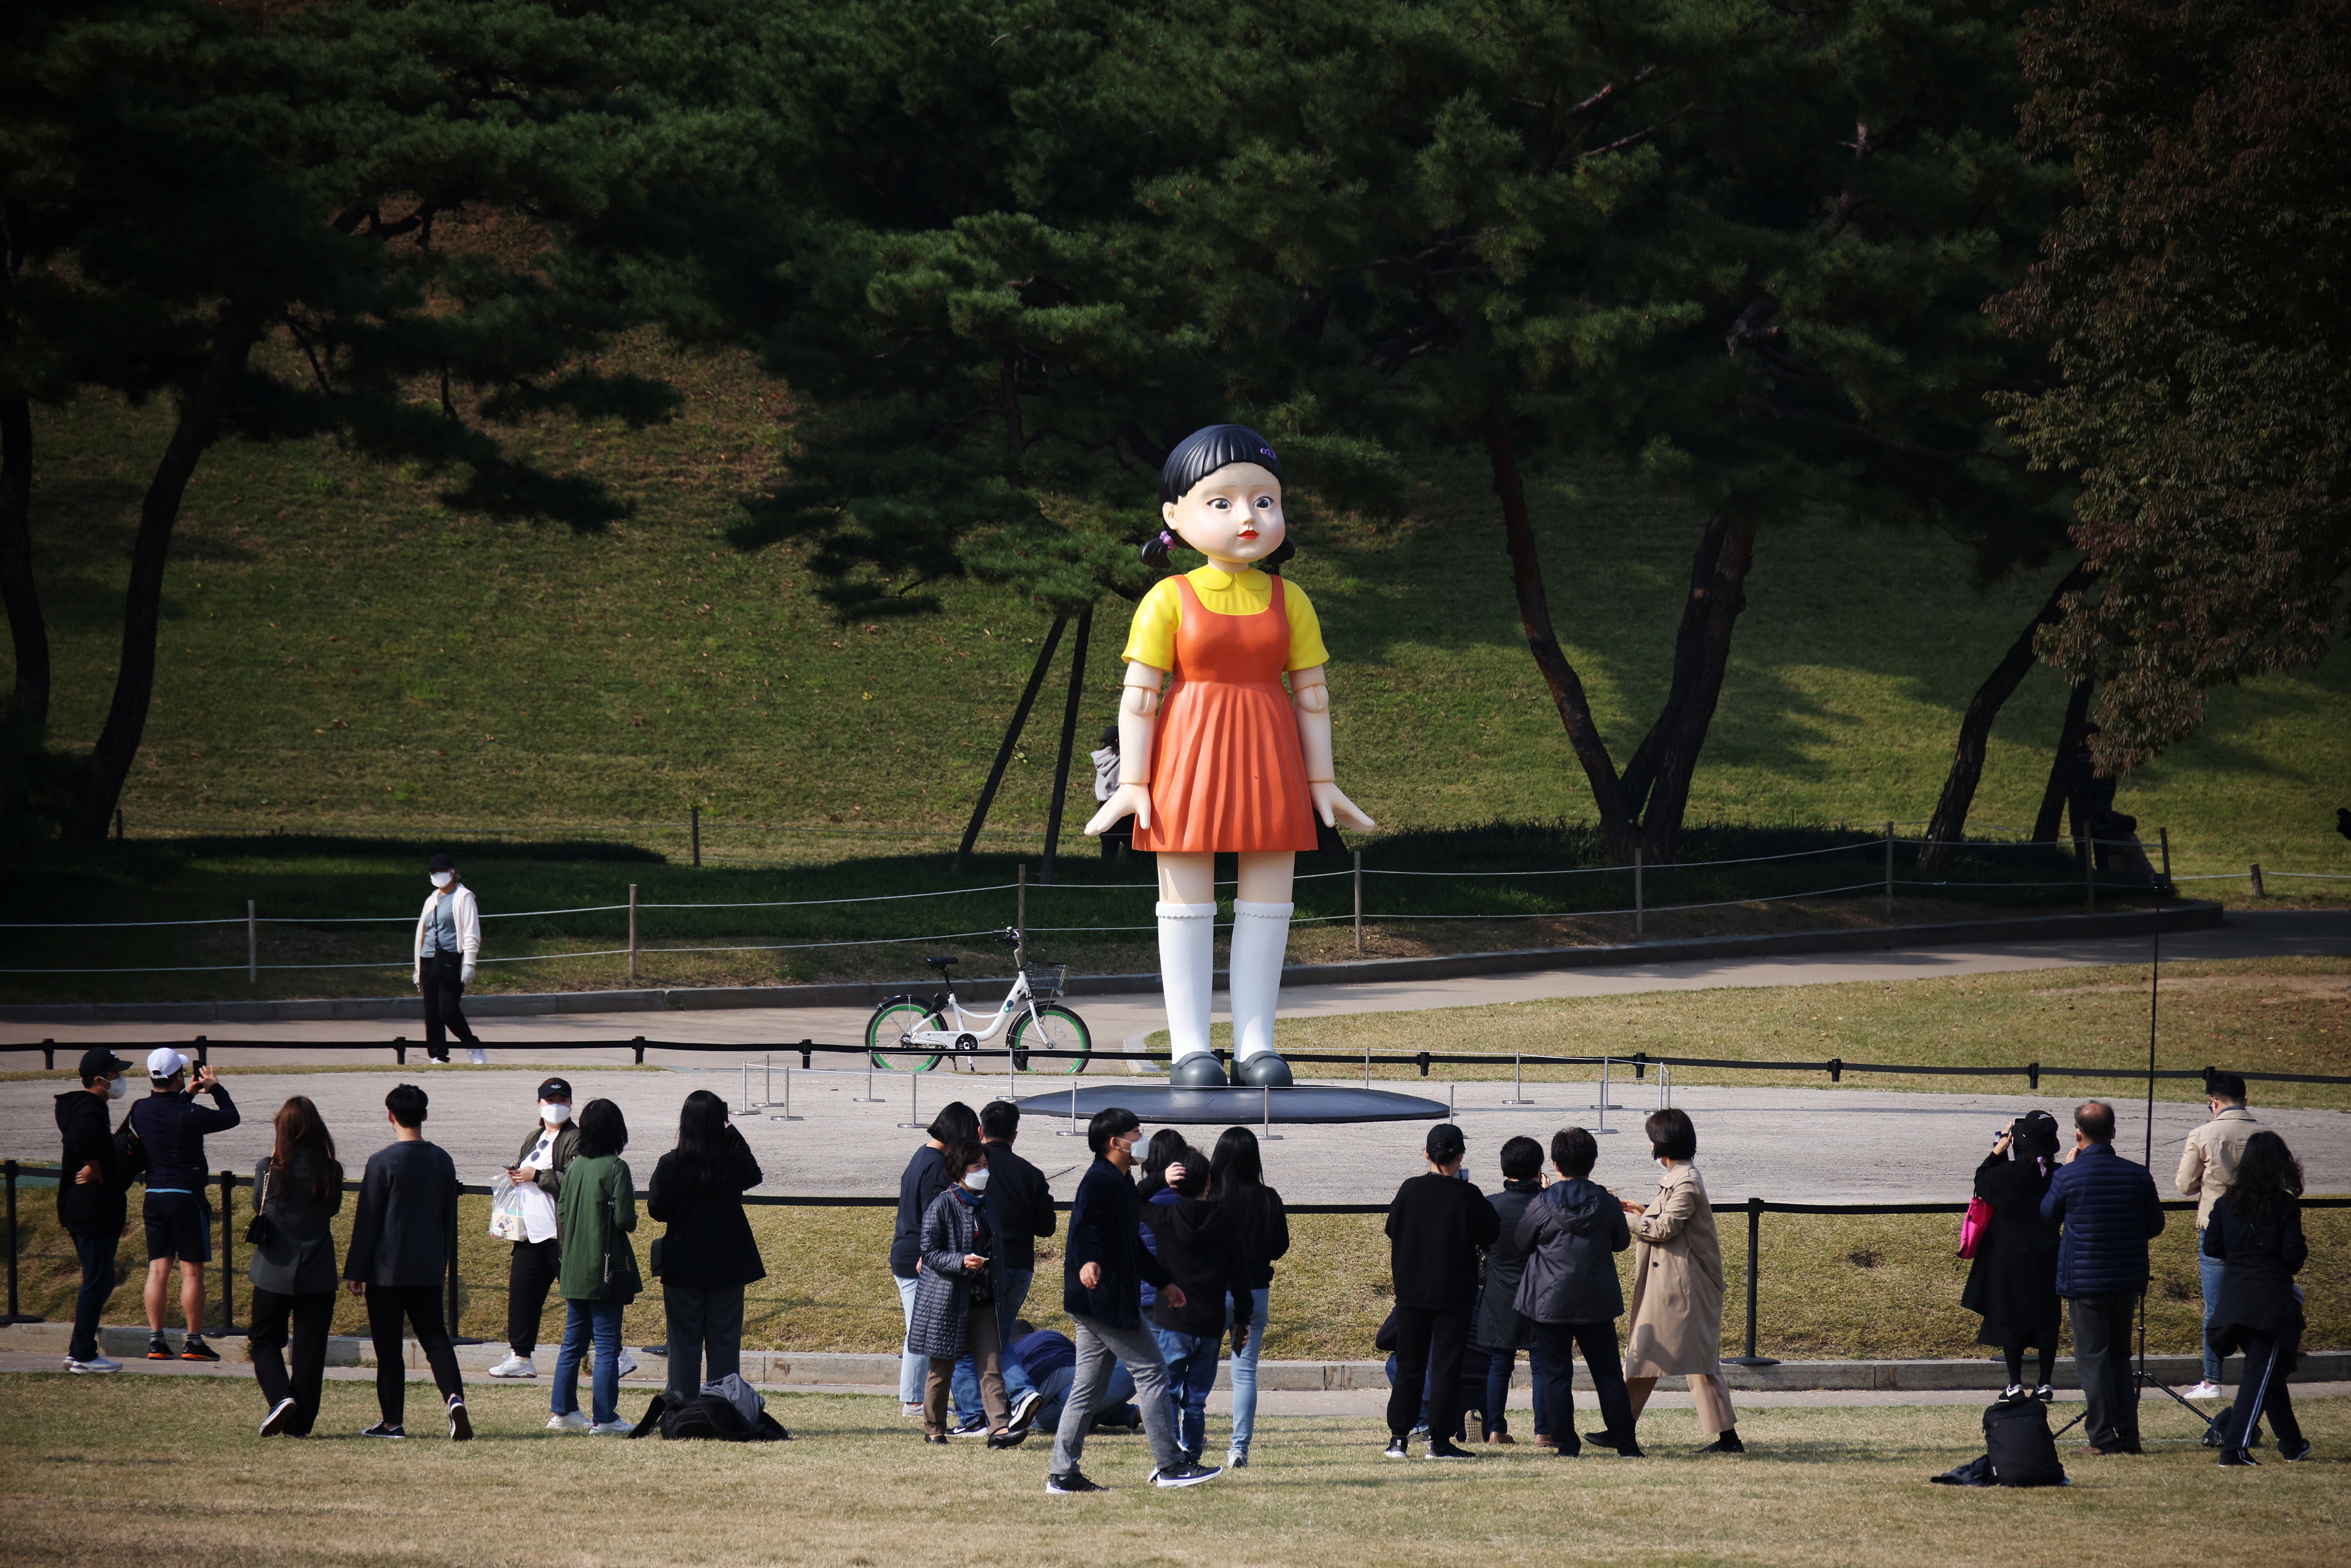 Muñeca gigante llamada "Younghee" de la serie de Netflix "El juego del calamar", en instalación en parque en Seúl, Corea del Sur. (Foto Prensa Libre: Reuters)